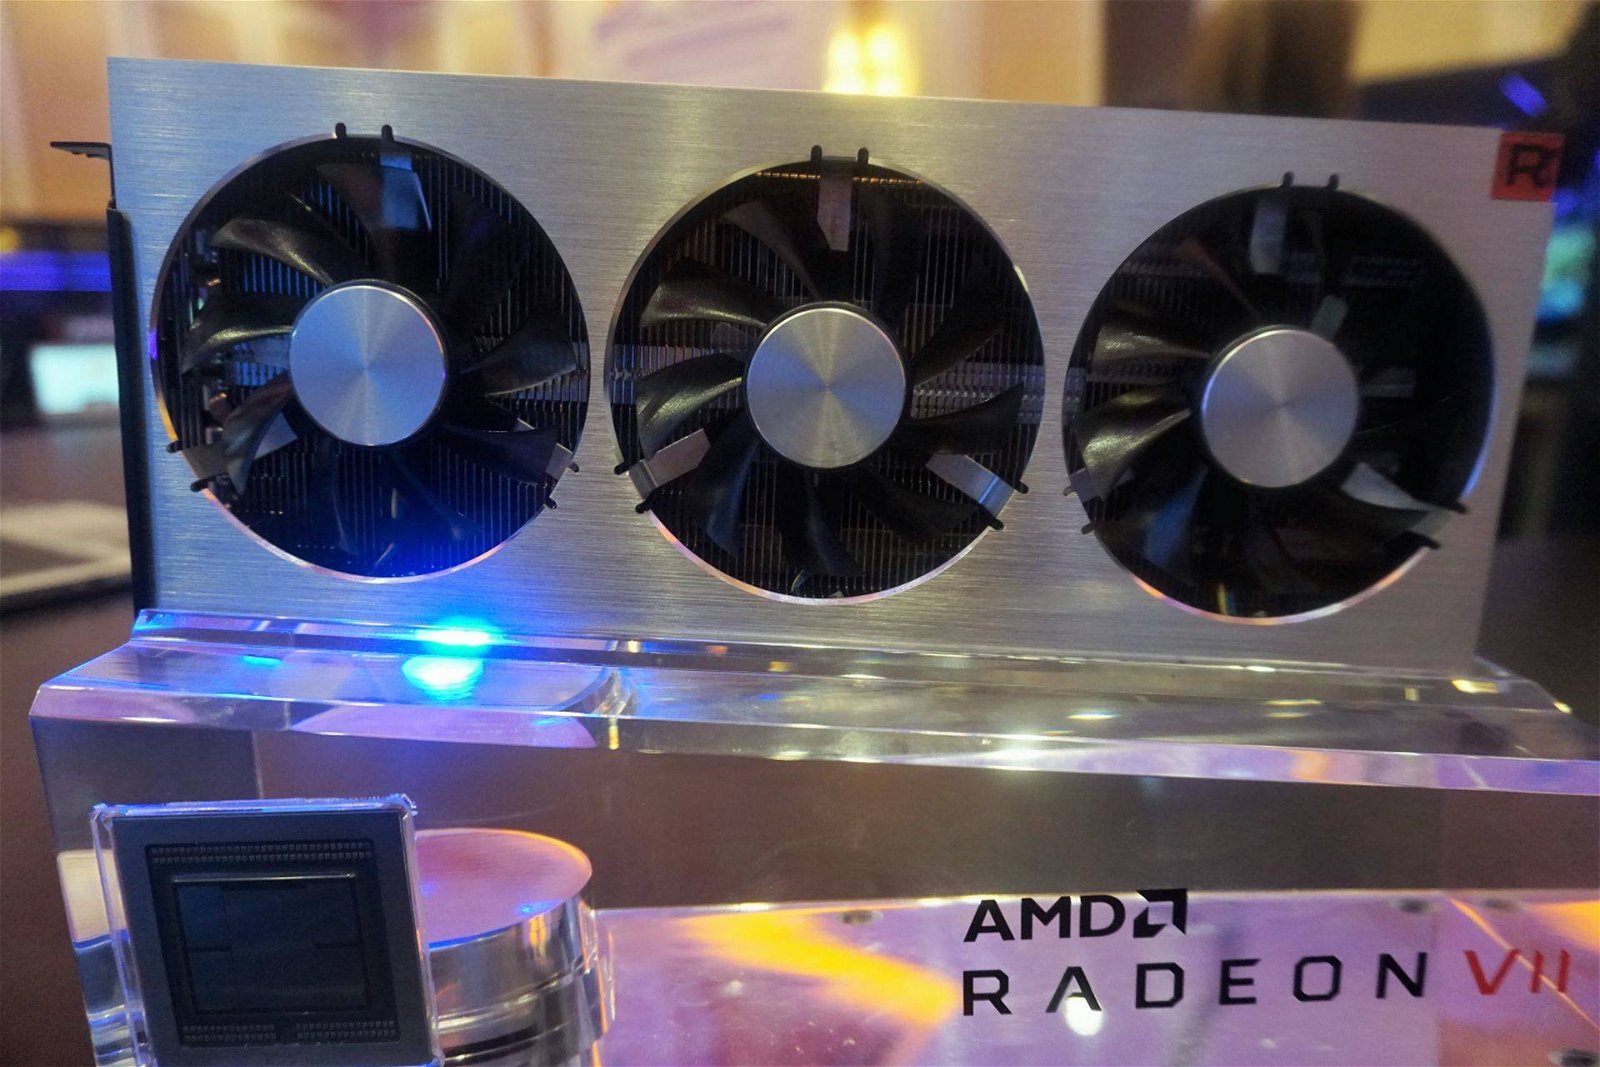 Immagine di AMD Radeon VII, per il momento non sono previsti modelli personalizzati dai partner (AGGIORNATA)